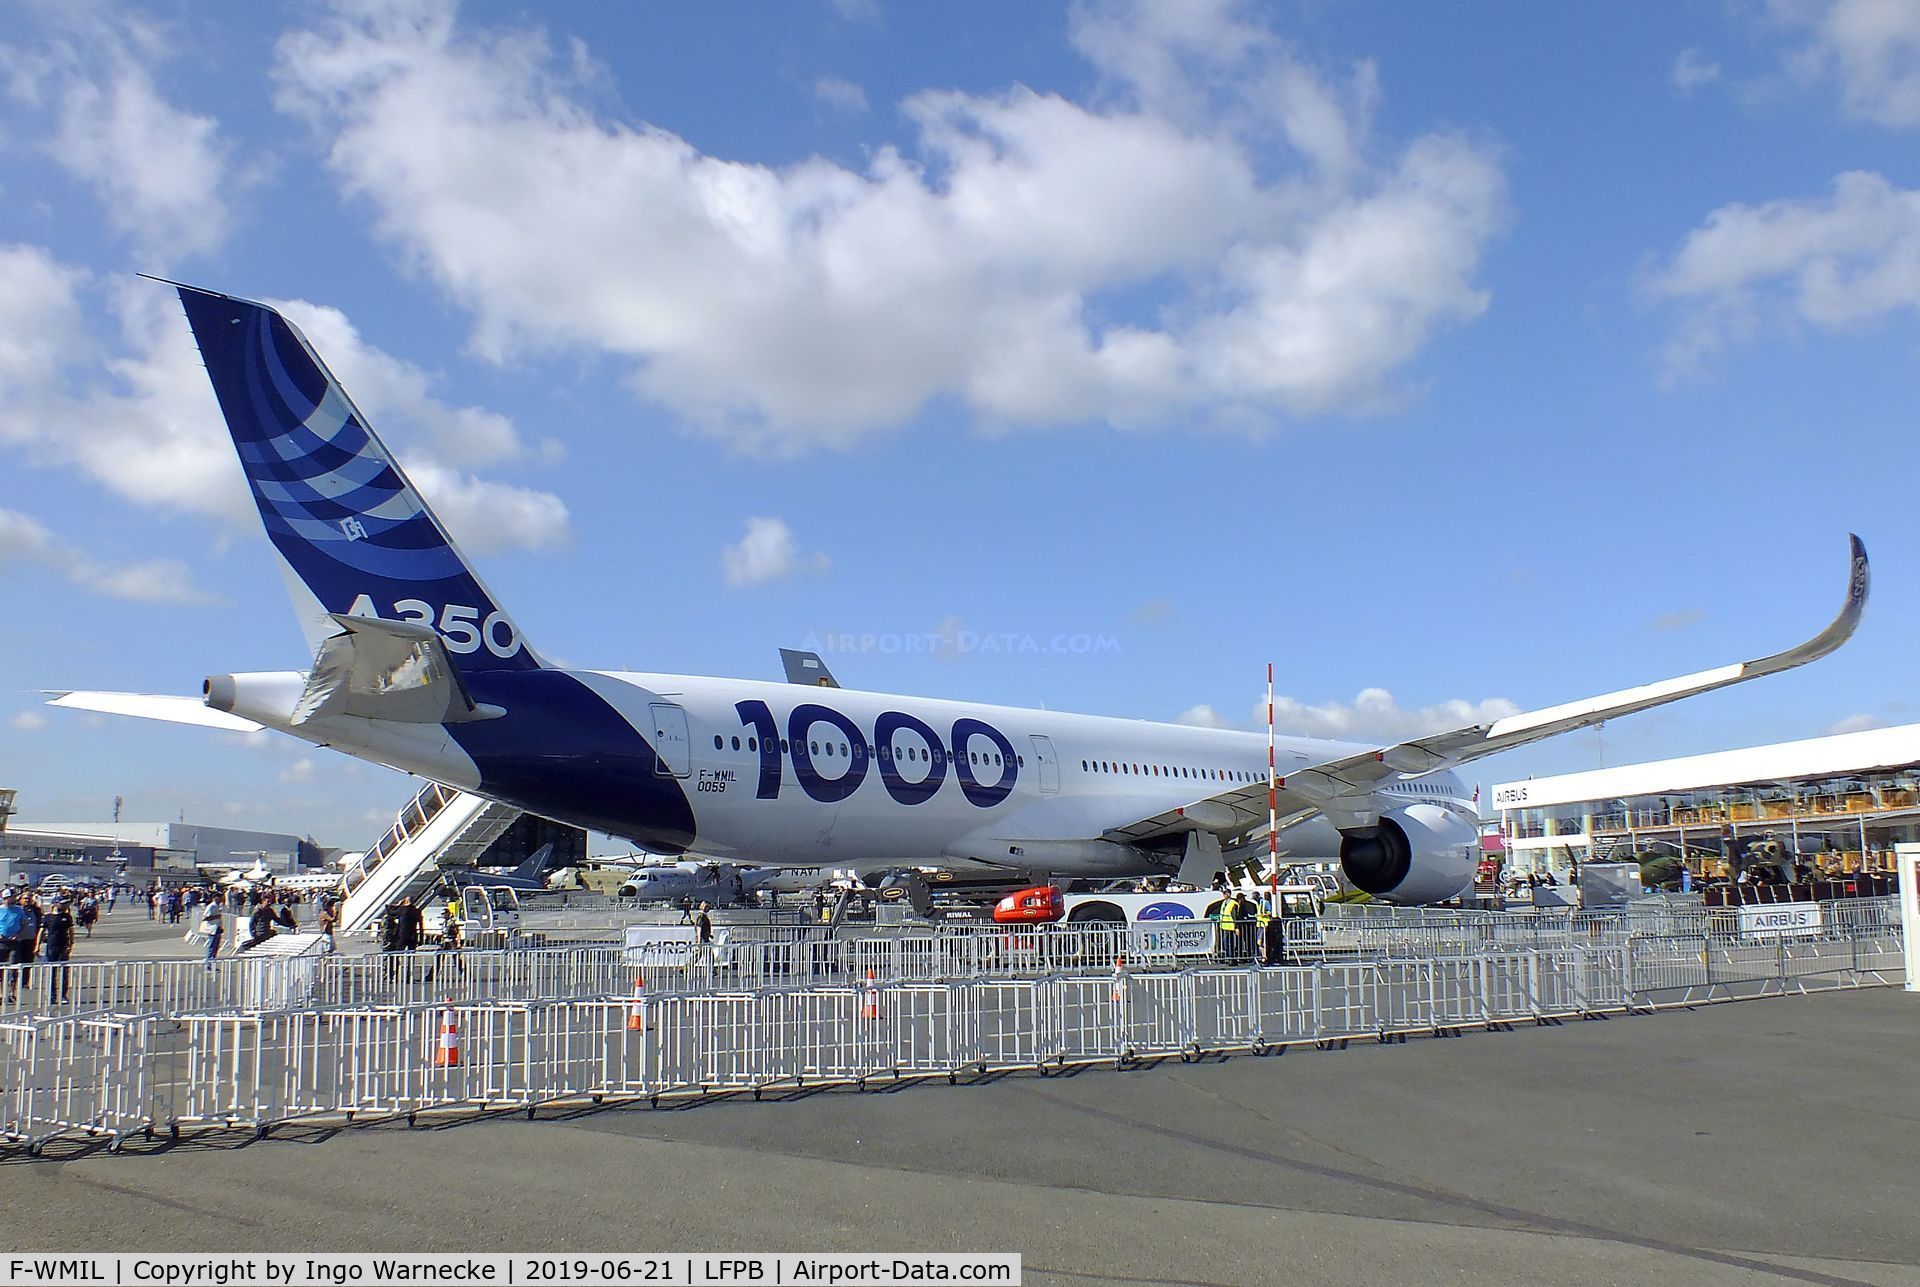 F-WMIL, 2016 Airbus A350-1041 C/N 059, Airbus A350-1041 at the Aerosalon 2019, Paris